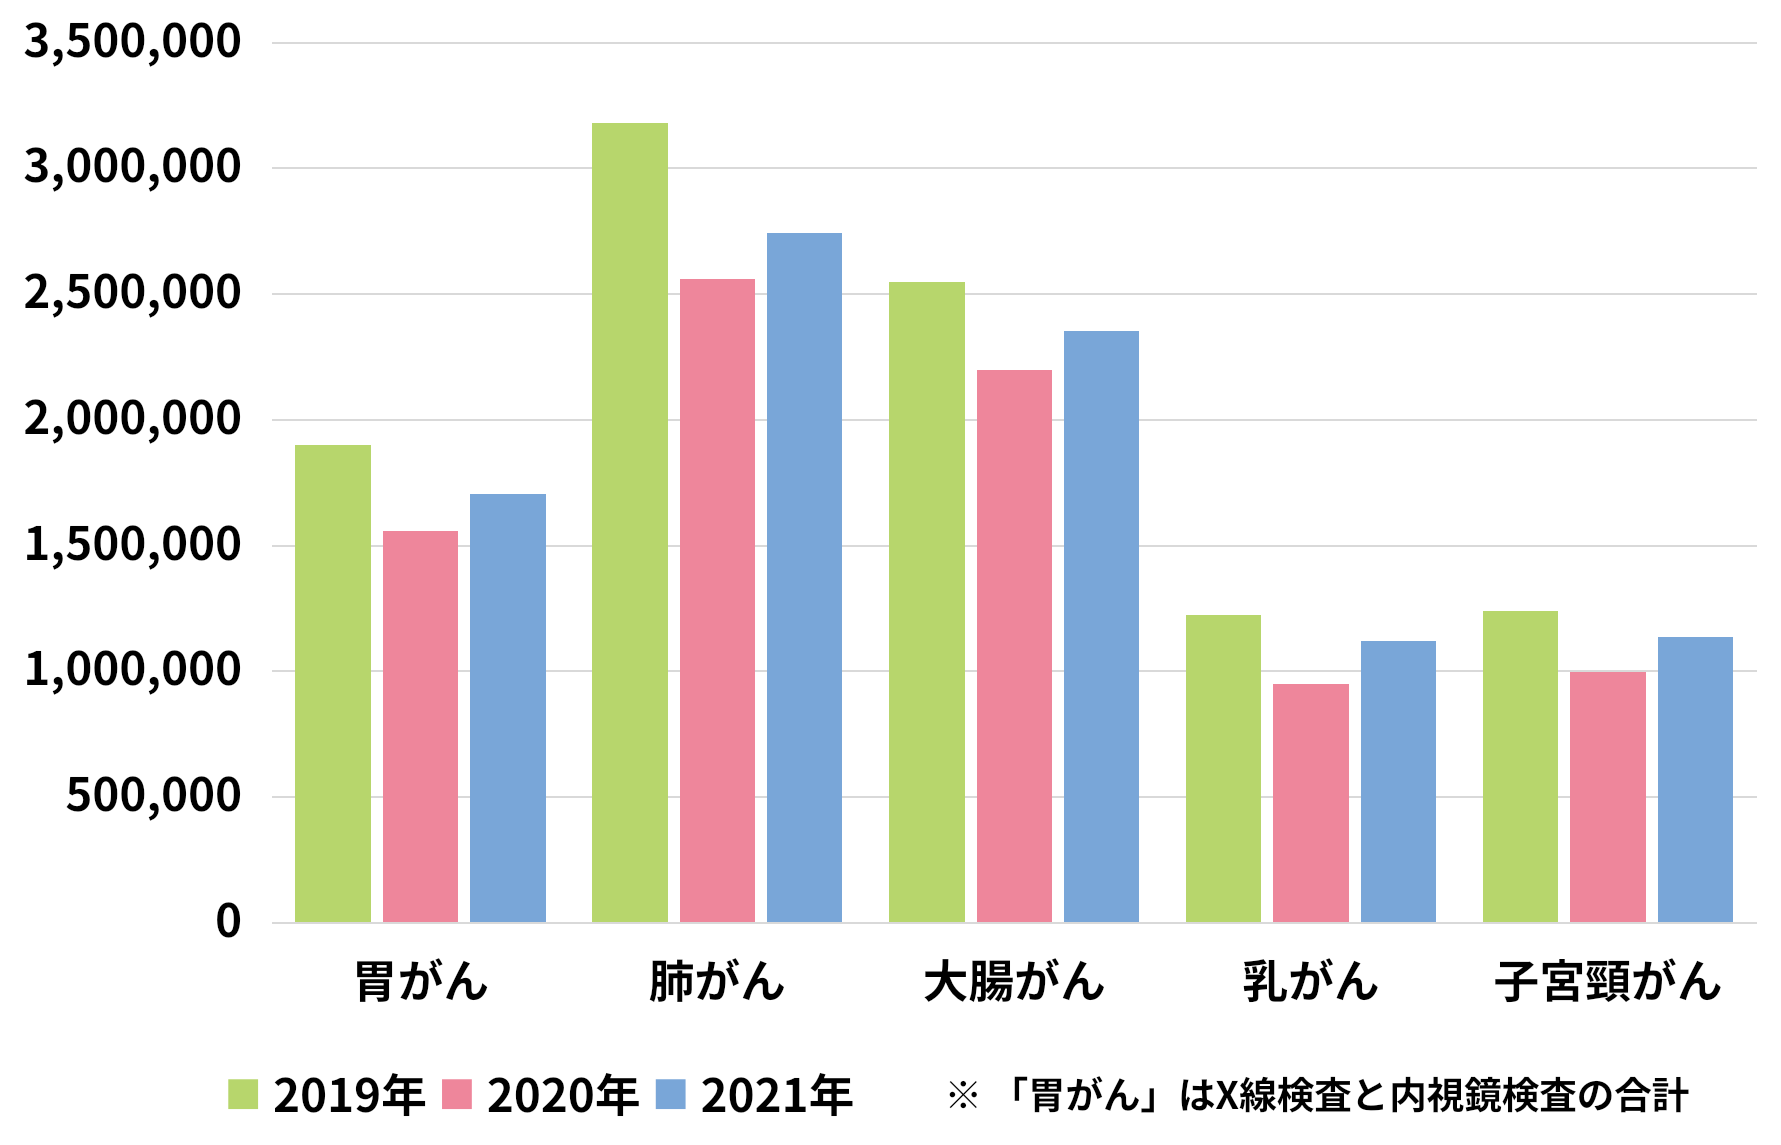 5つのがん検診受診者数の推移（2019年～2021年）